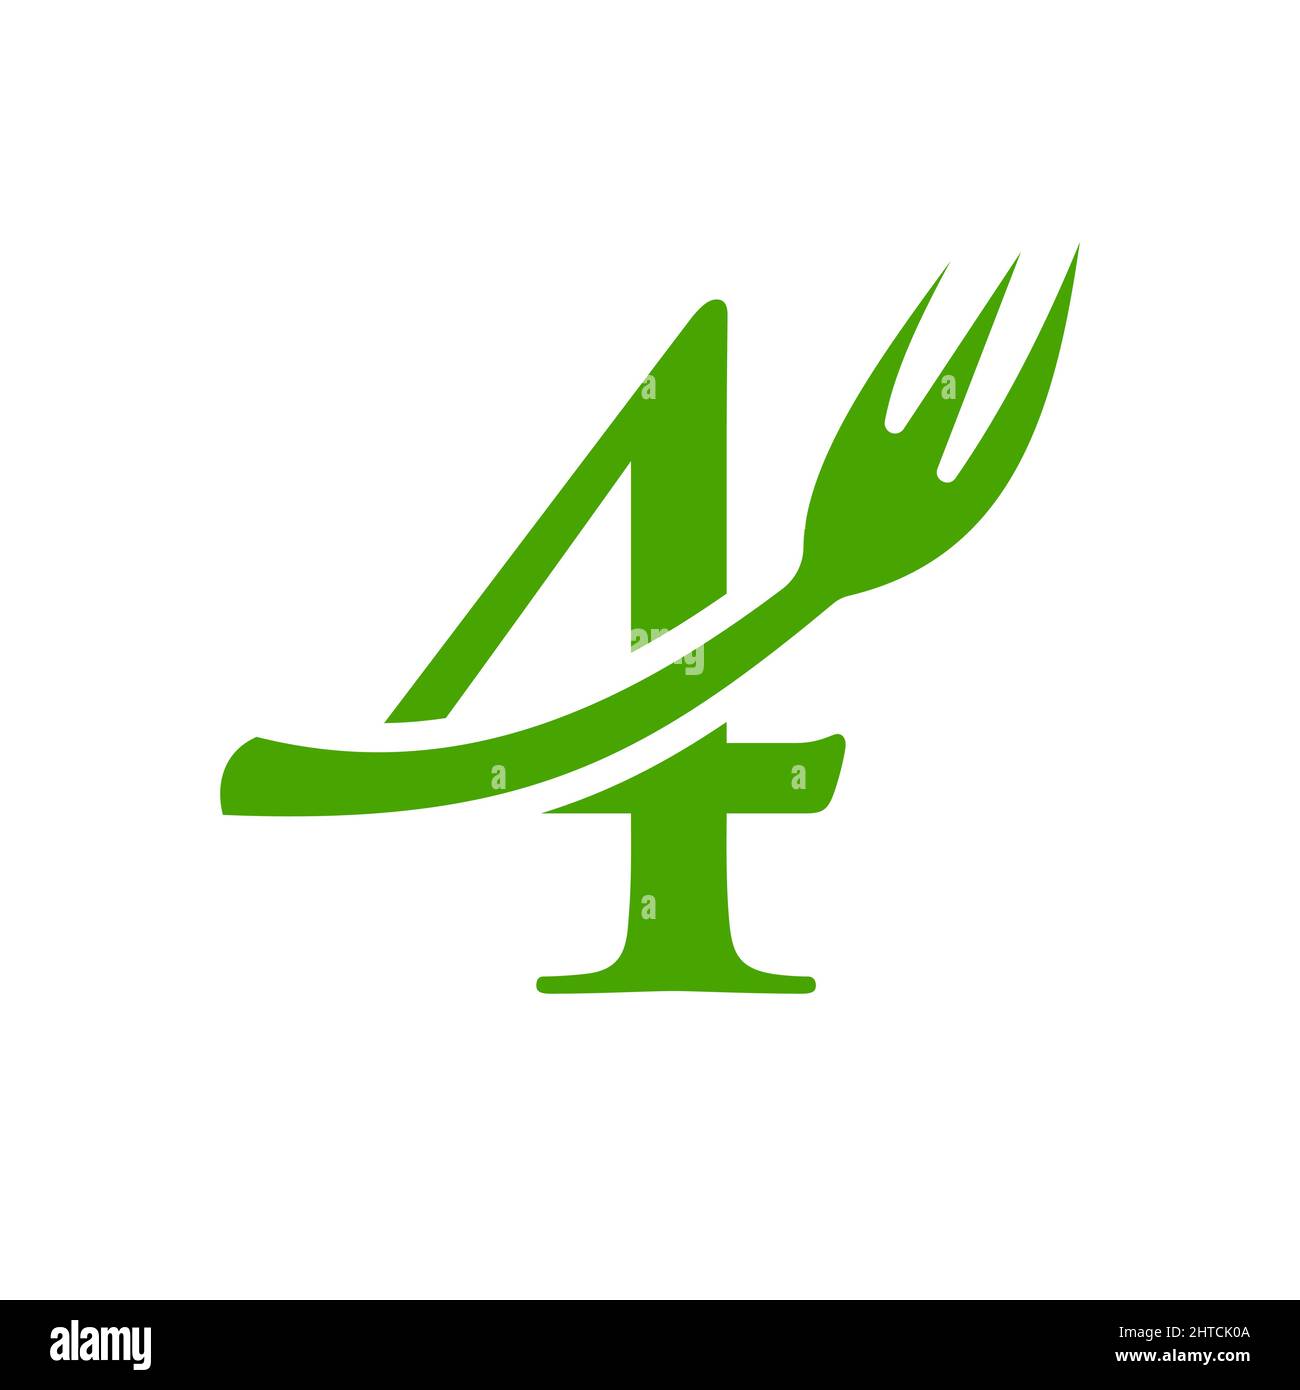 Restaurant Logo Template On Letter 4. Letter 4 Restaurant Logo Sign Design Stock Vector